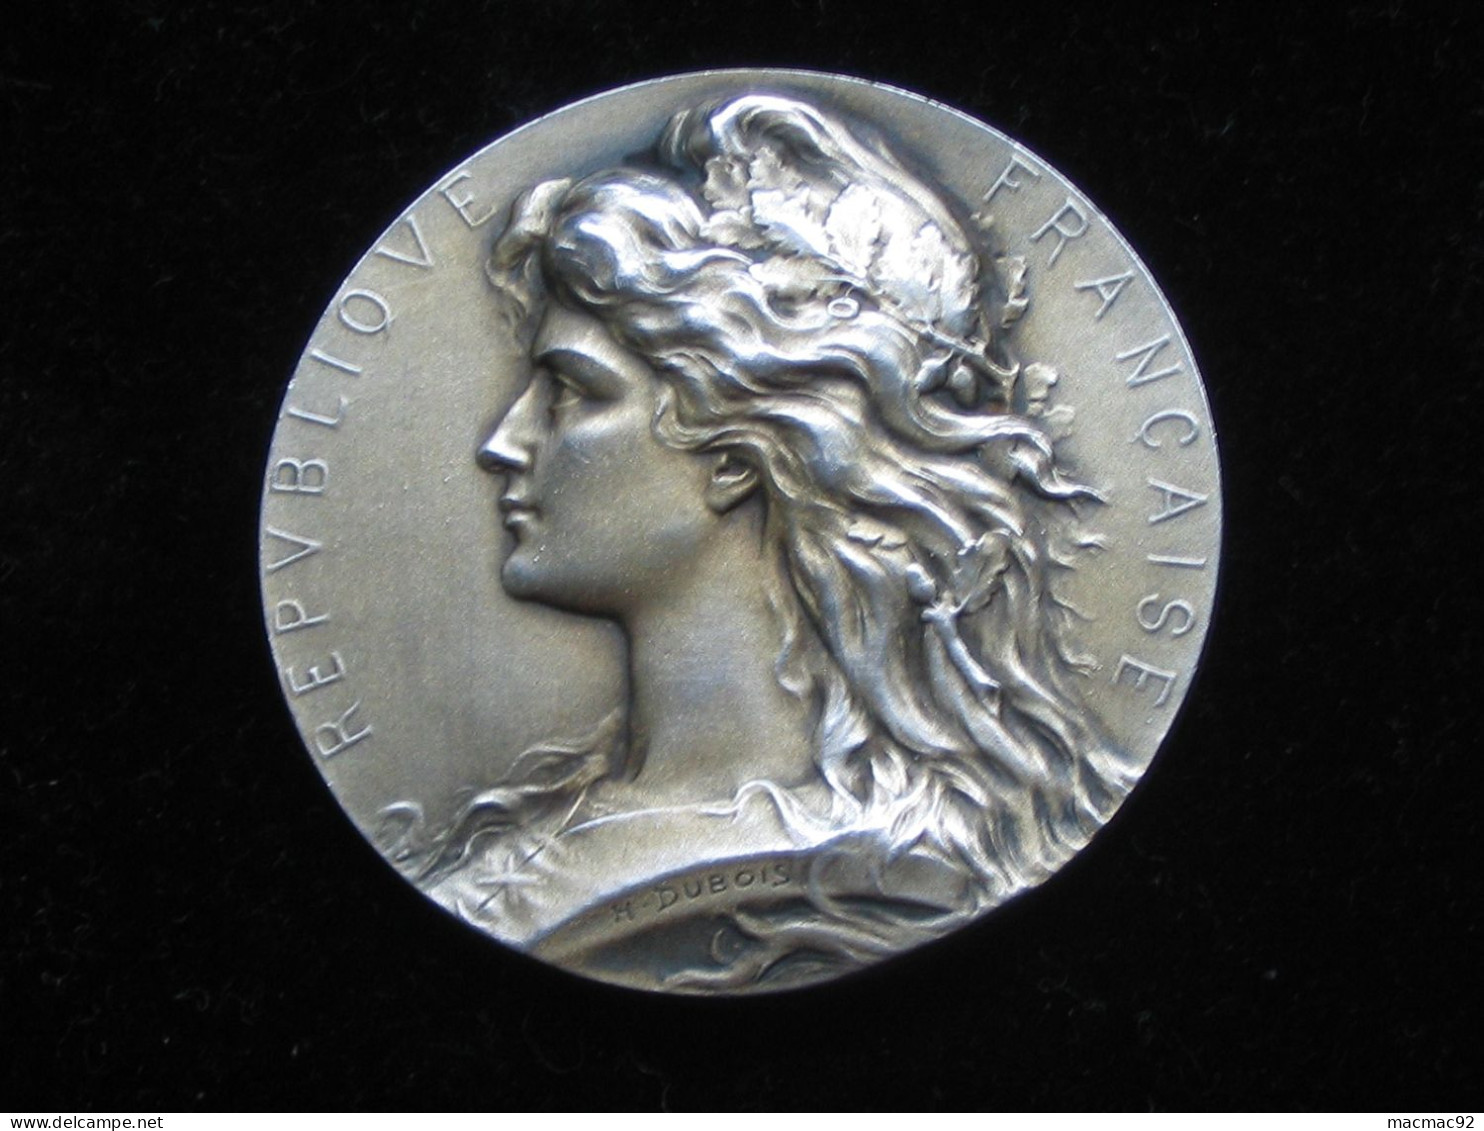 Médaille EN ARGENT -Société D'Horticulture D'ALGERIE   **** EN ACHAT IMMEDIAT **** - Professionnels / De Société